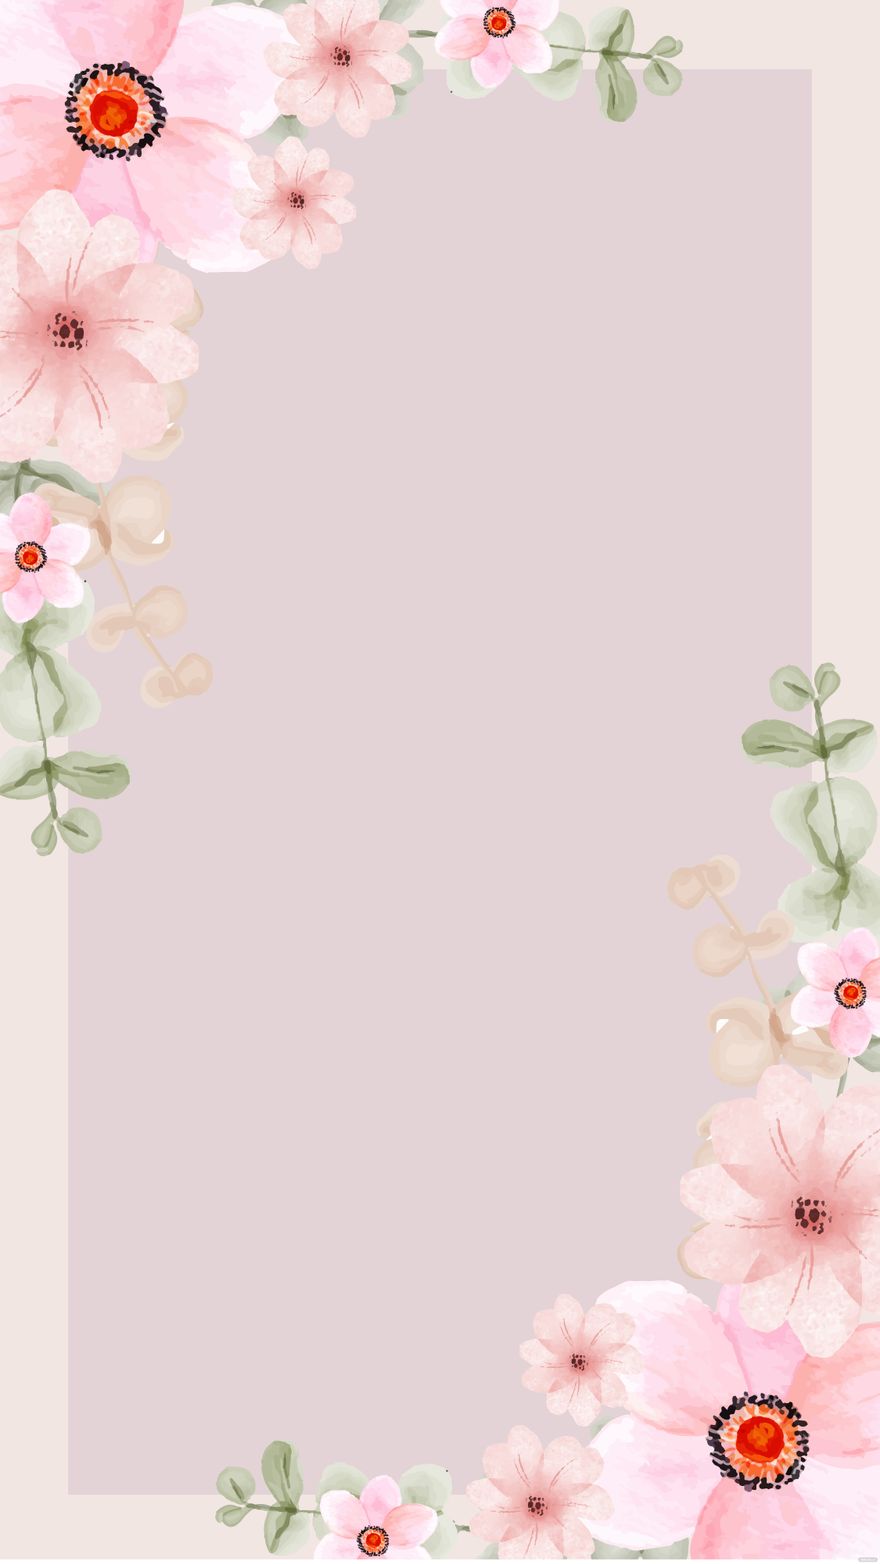 Free Pink Vintage Floral Background